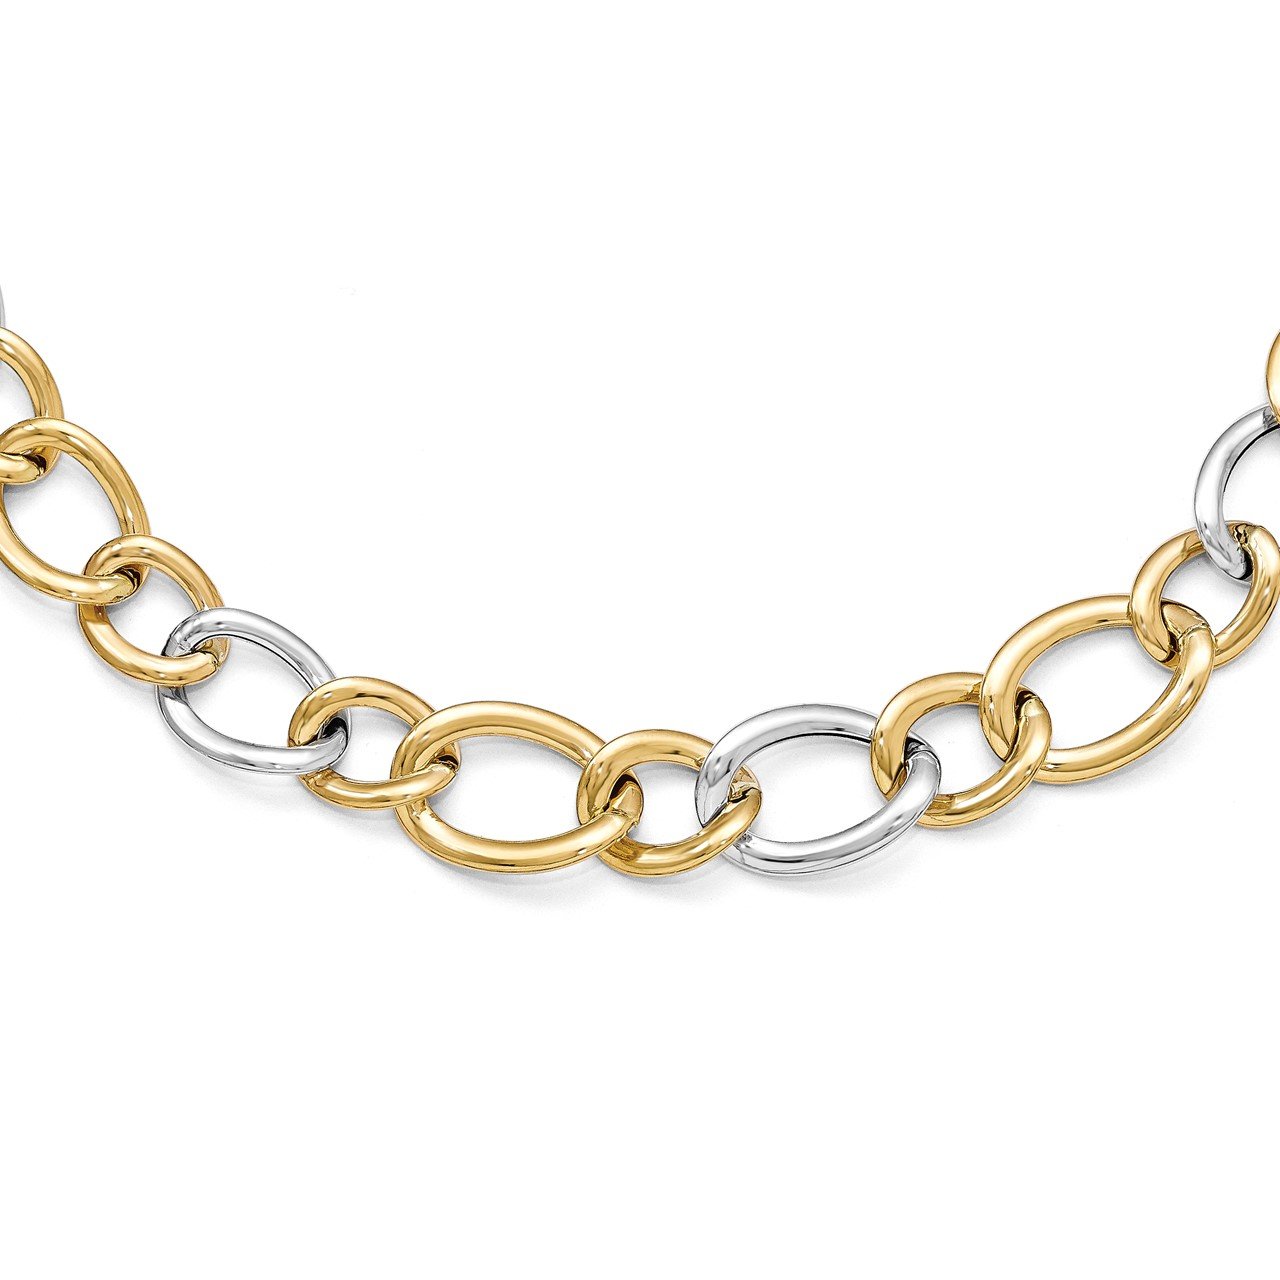 Leslie's 14k Two-tone Polished Link Necklace